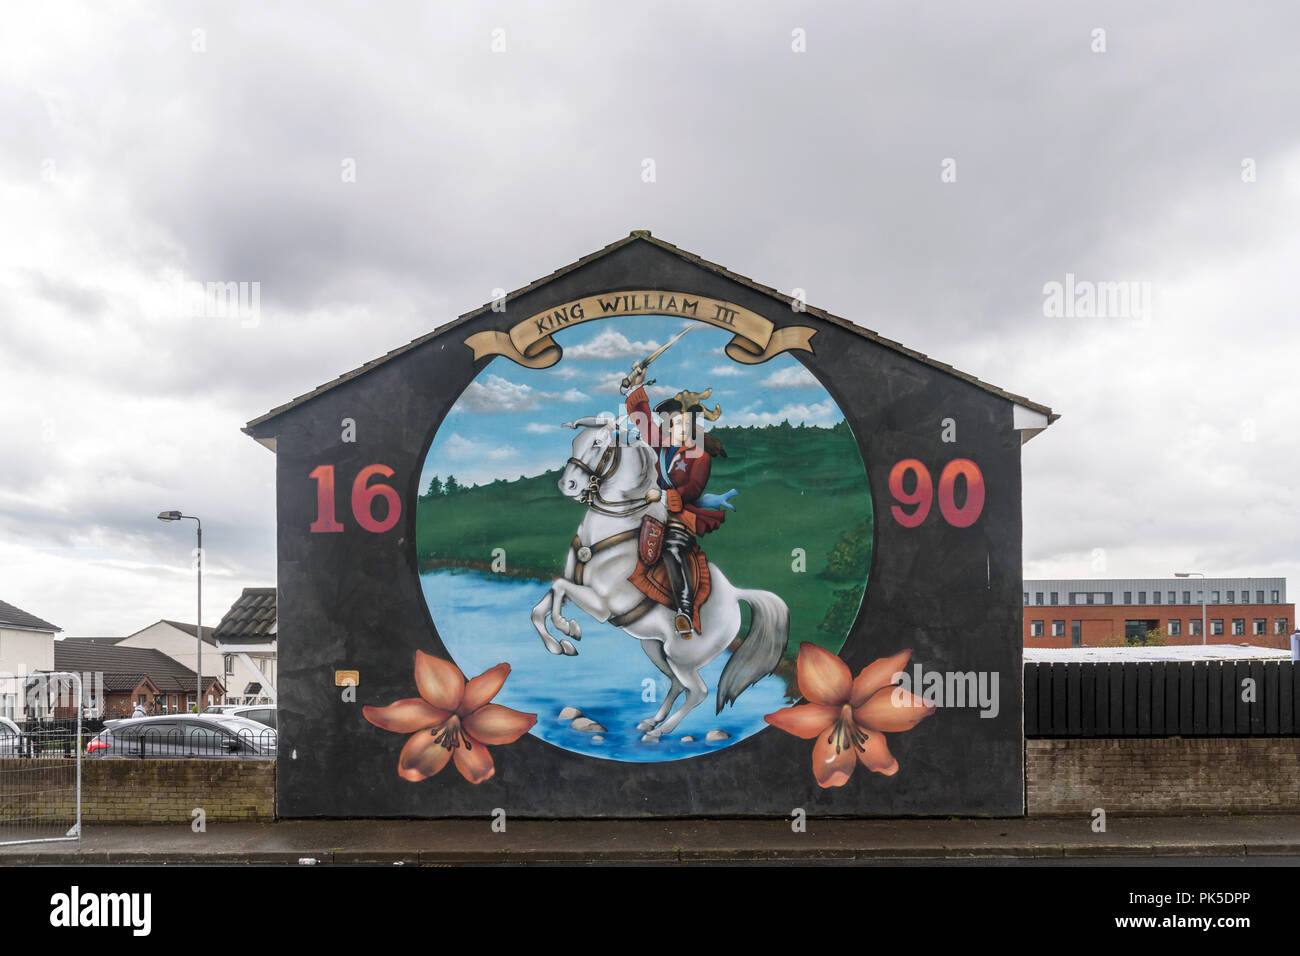 Mural of King William III in Belfast, Northern Ireland Stock Photo